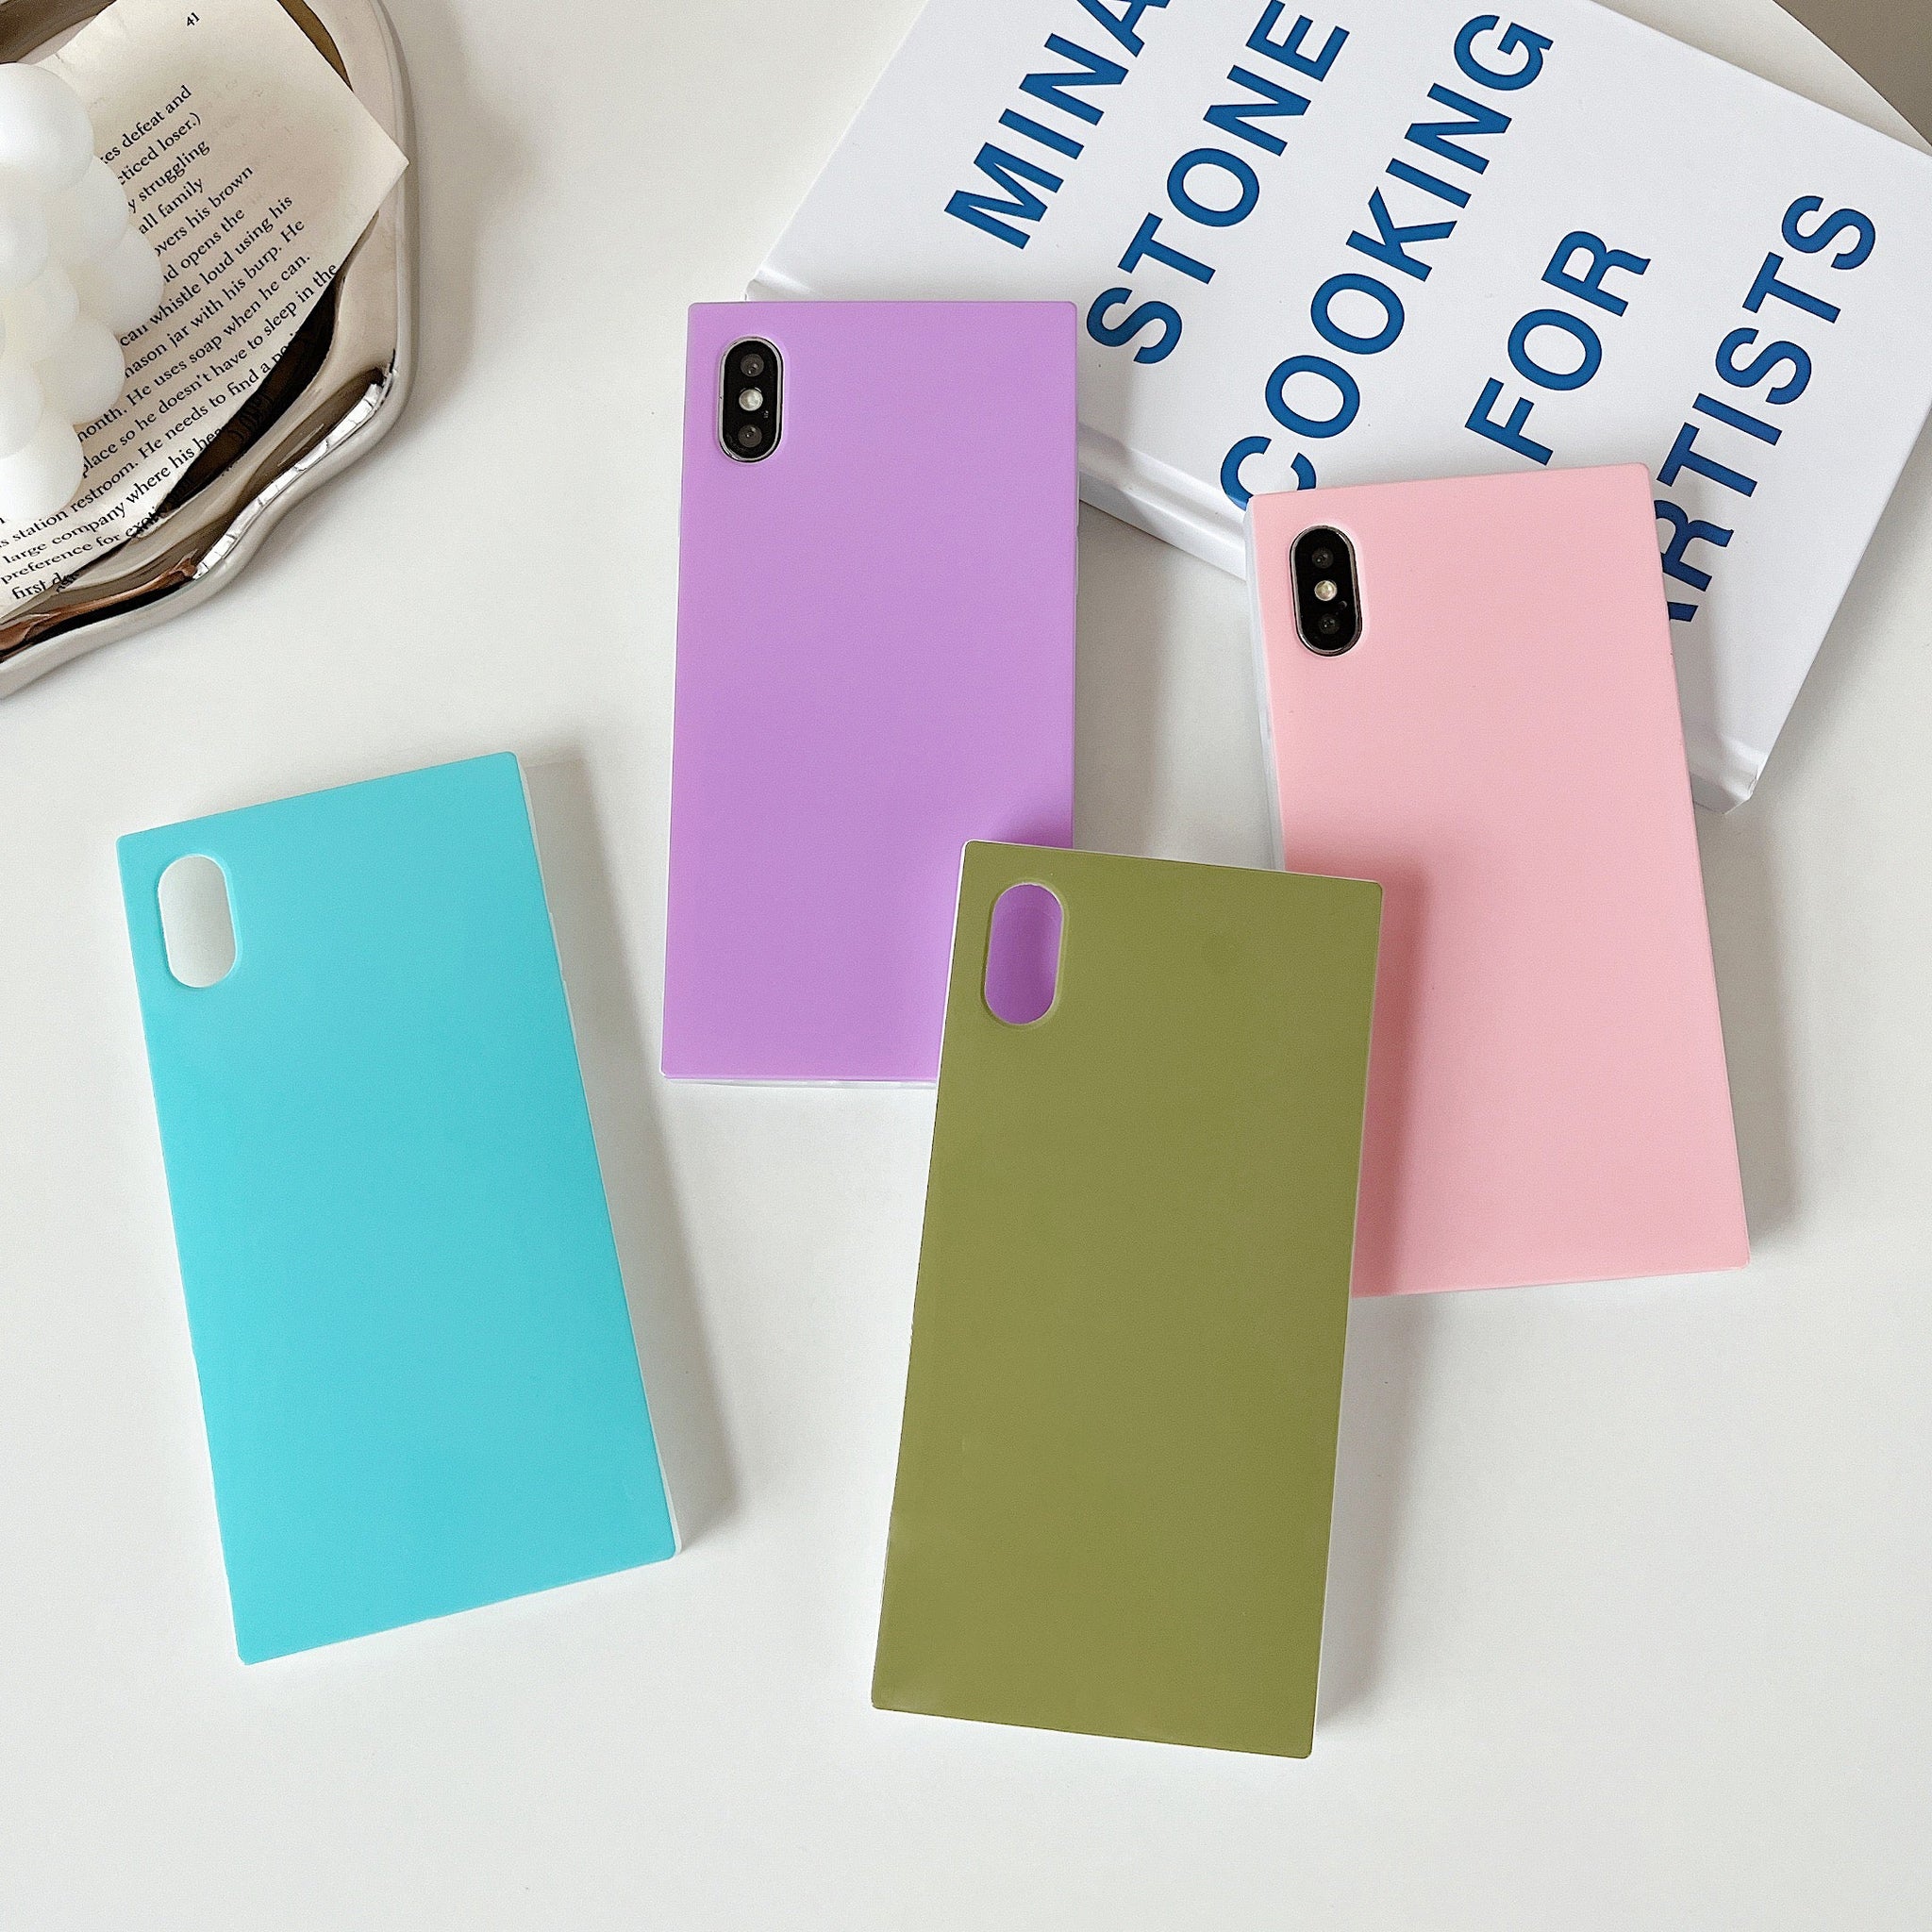 iPhone XS/iPhone X Case Square Pastel Plain Color (Lavender Purple)